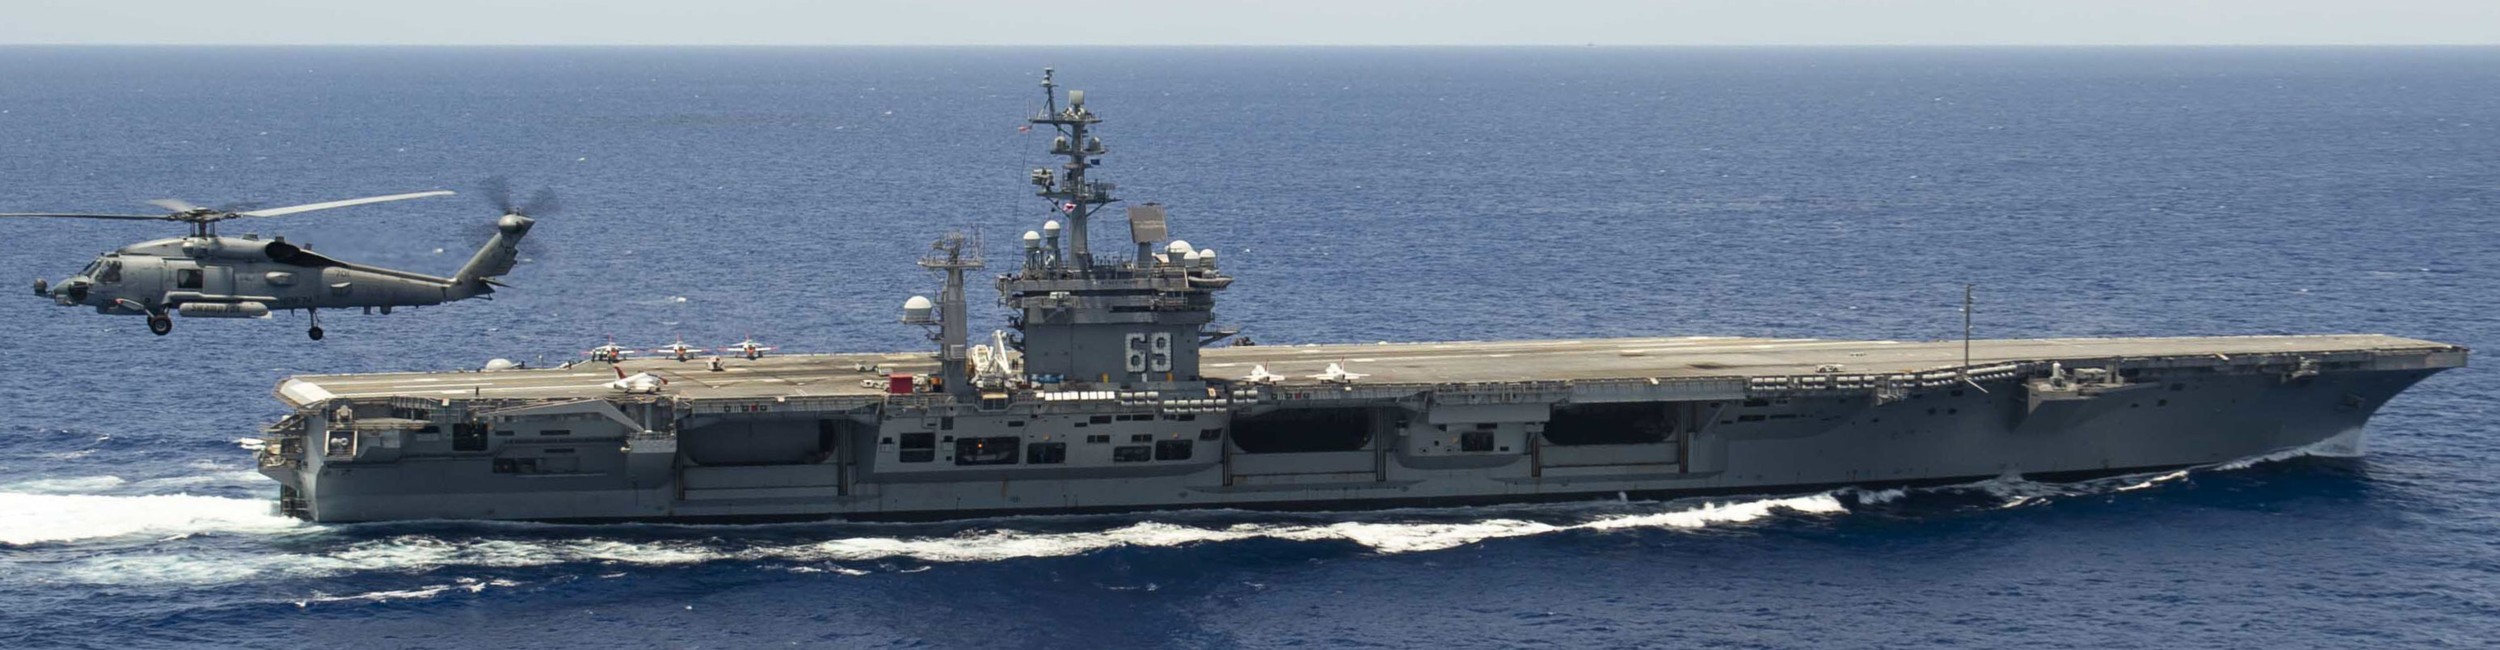 cvn-69 uss dwight d. eisenhower aircraft carrier us navy 443